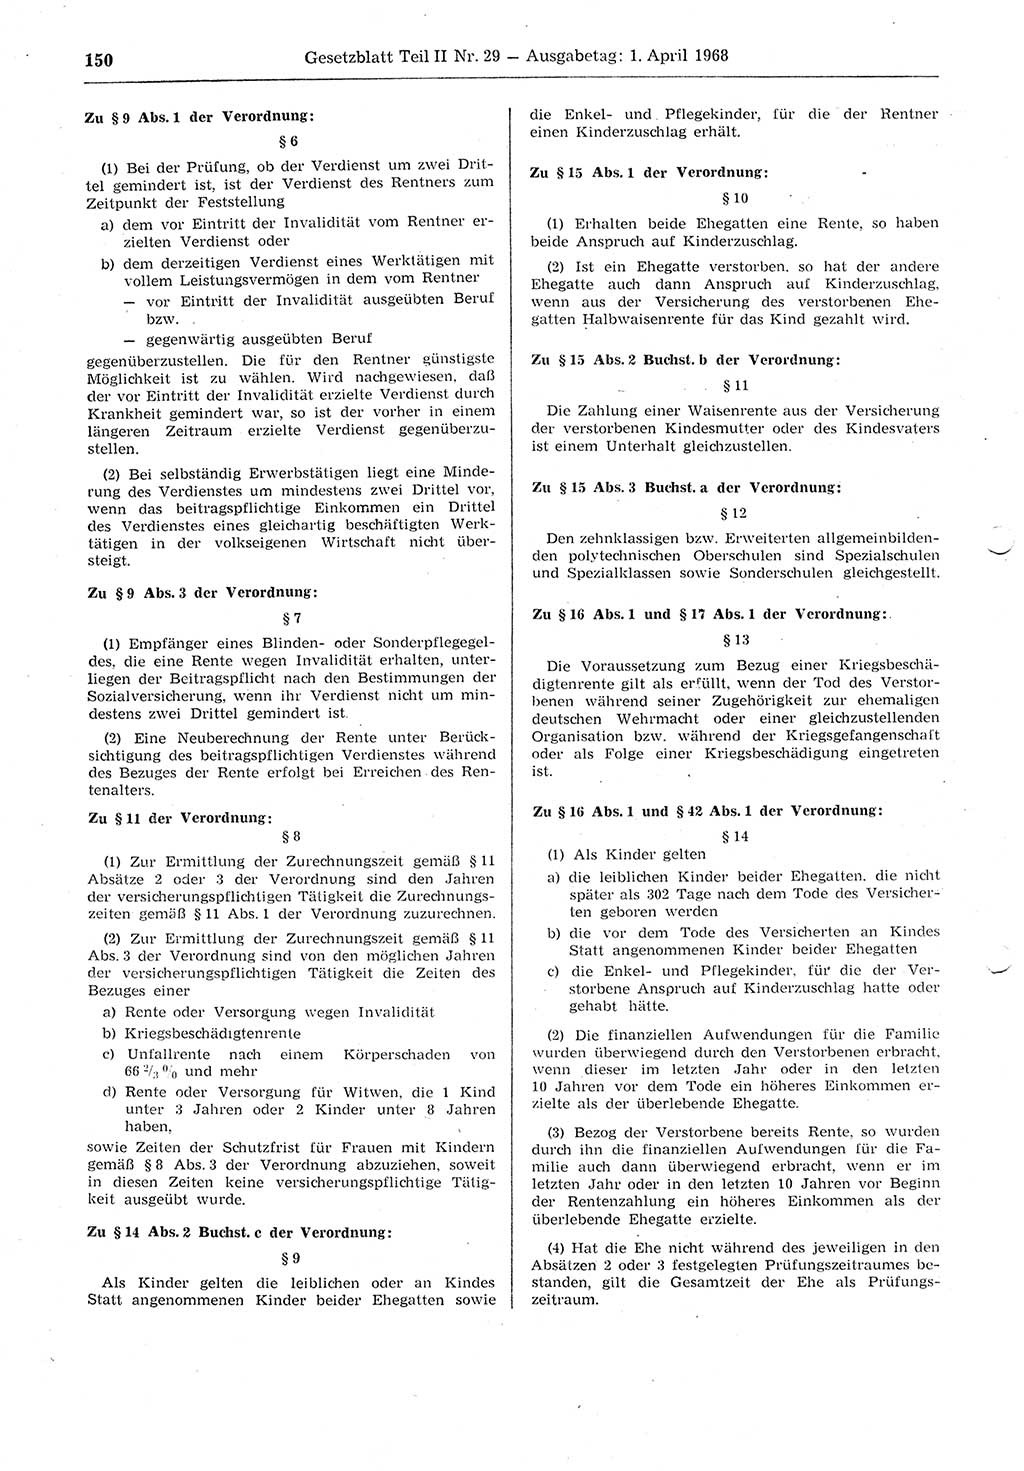 Gesetzblatt (GBl.) der Deutschen Demokratischen Republik (DDR) Teil ⅠⅠ 1968, Seite 150 (GBl. DDR ⅠⅠ 1968, S. 150)